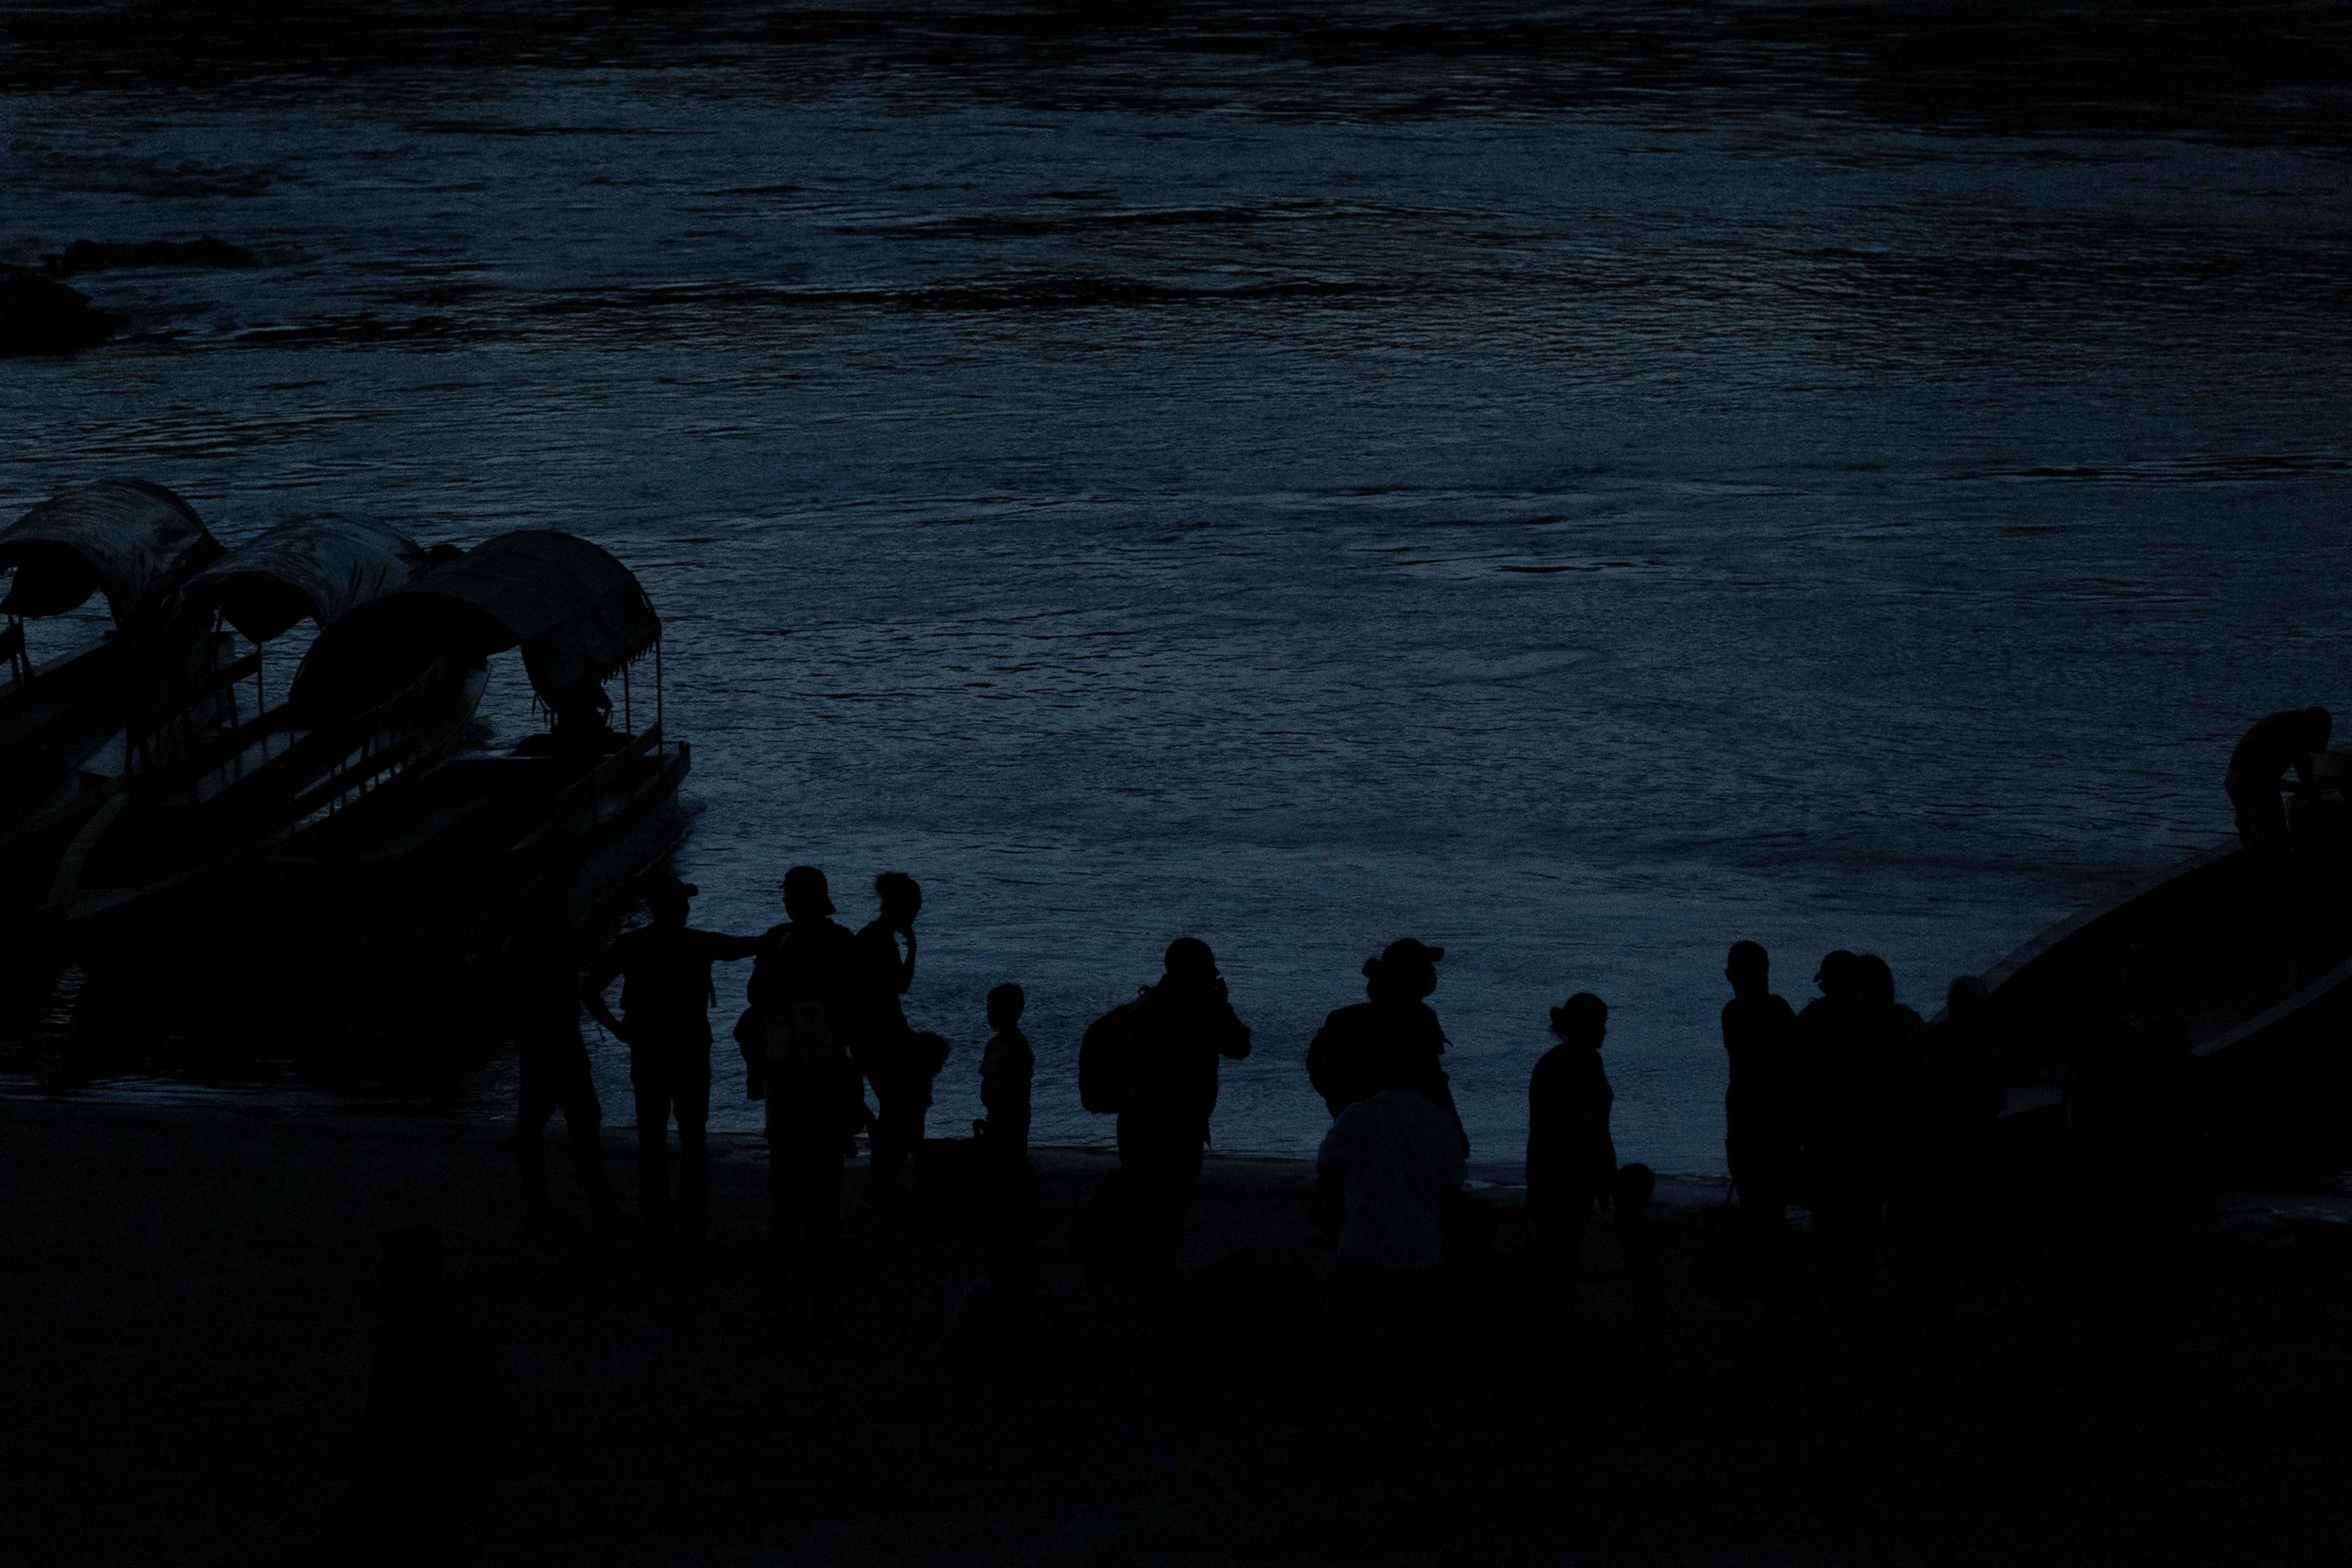 Migrantes ingresan a México de manera indocumentada despues de cruzar el río Usumacinta subidos en una balsa, en Frontera Corozal, Chiapas, México. Foto de El Faro: Isabel Mateos.